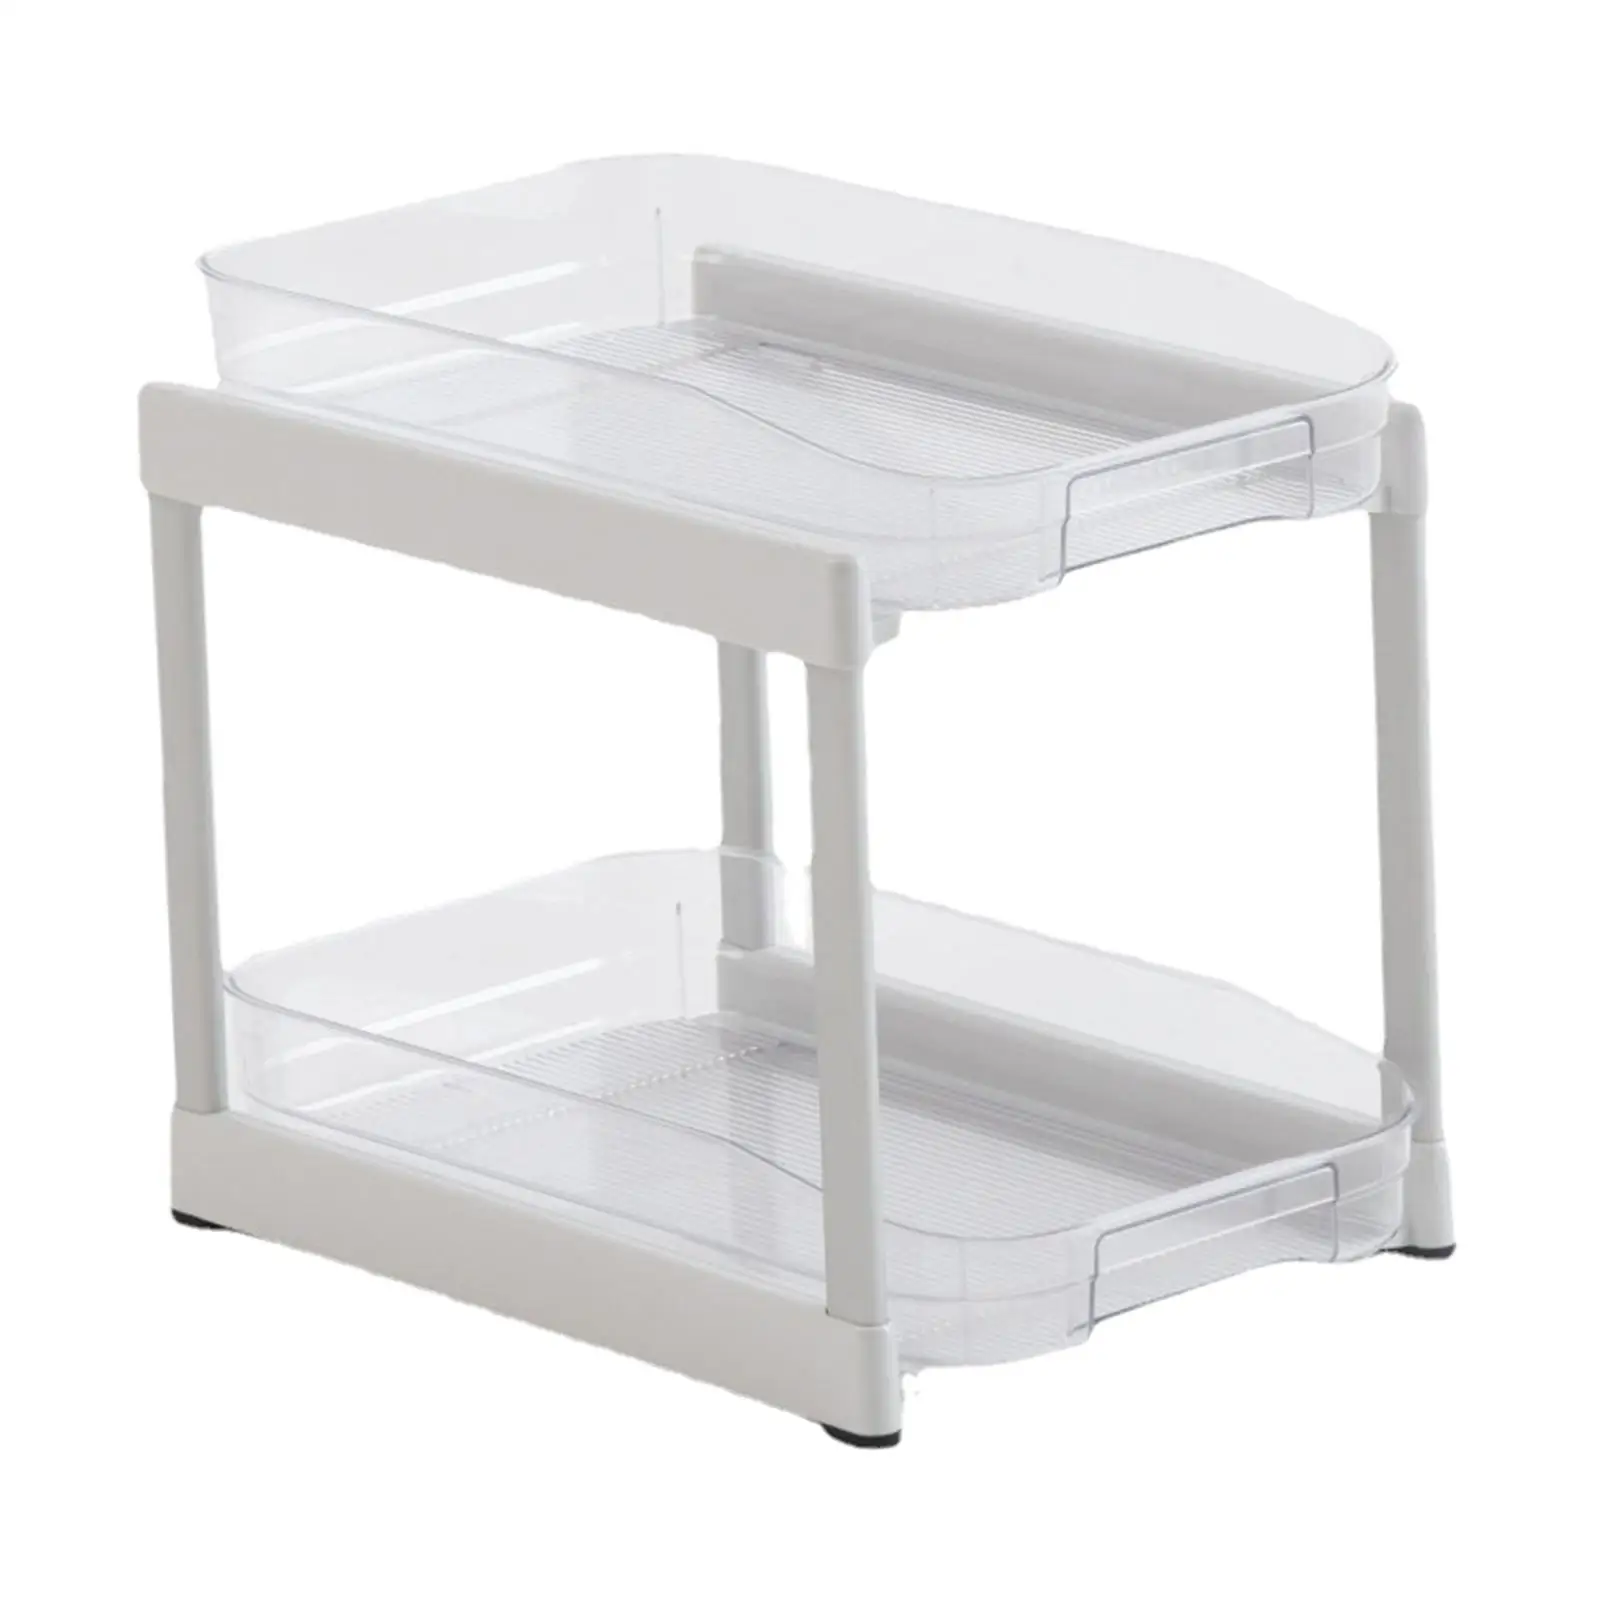 Clear Organizer Practical for Cabinet Convenient Accessories Sliding Tray Drawer Organizer 2 Tier Versatile under Sink Shelf